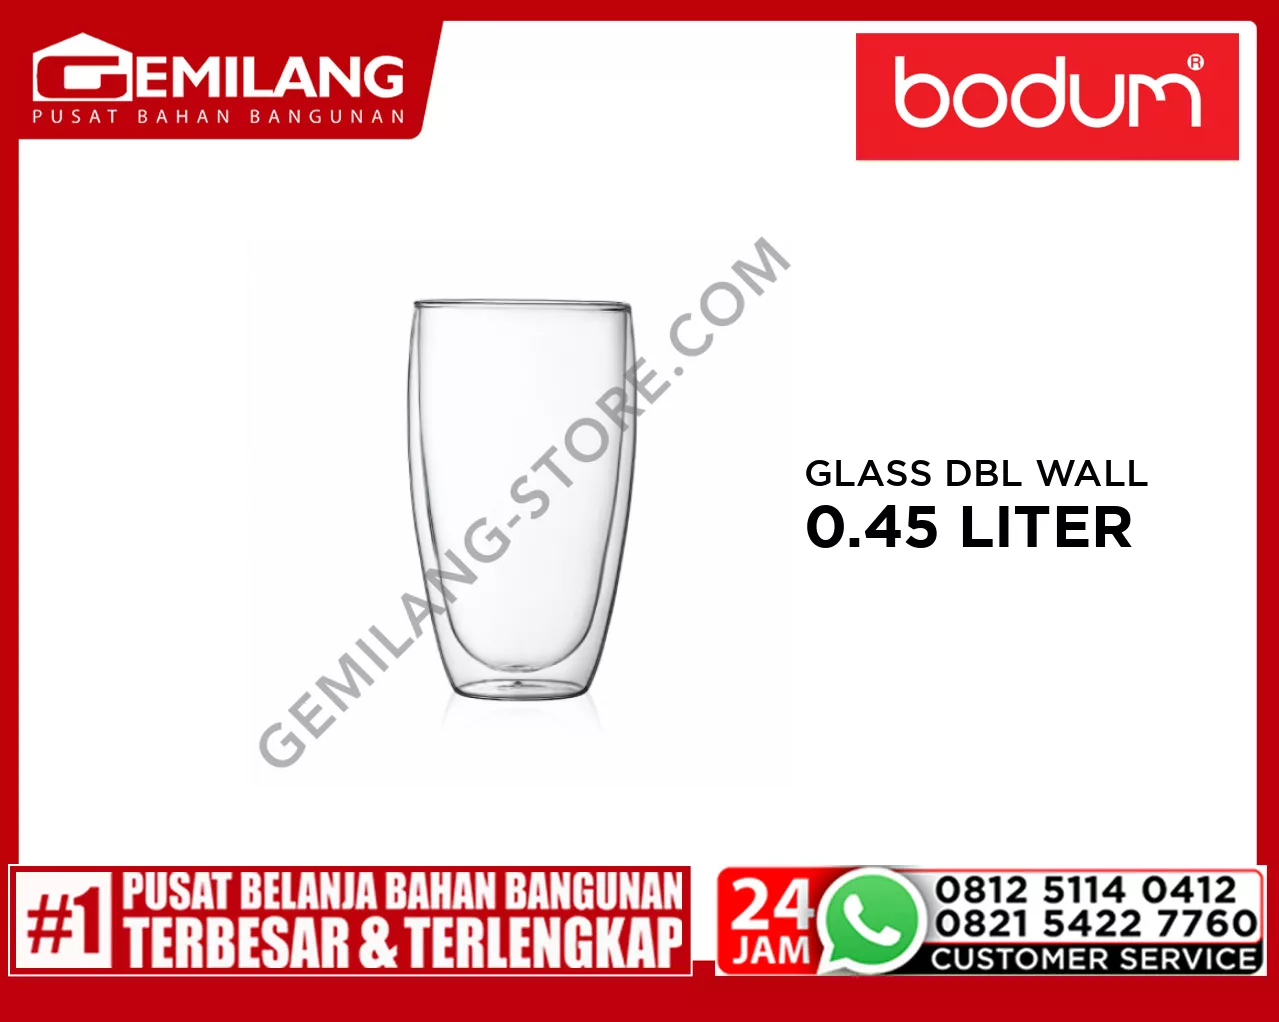 BODUM PAVINA GLASS DOUBLE WALL LARGE TRANSPARENT 0.45ltr 15oz BDM4560-10